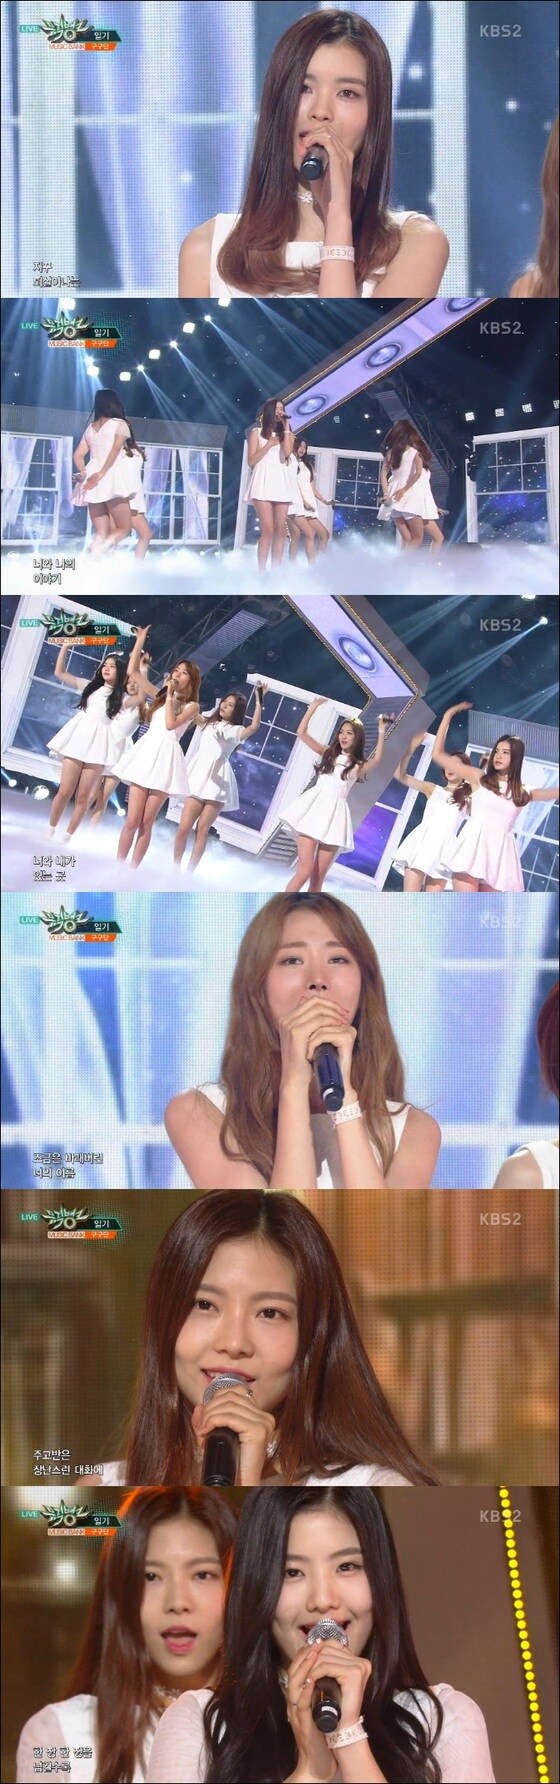 걸그룹 구구단이 소녀 감성을 '일기'에 담았다. © News1star / KBS2 '뮤직뱅크' 캡처